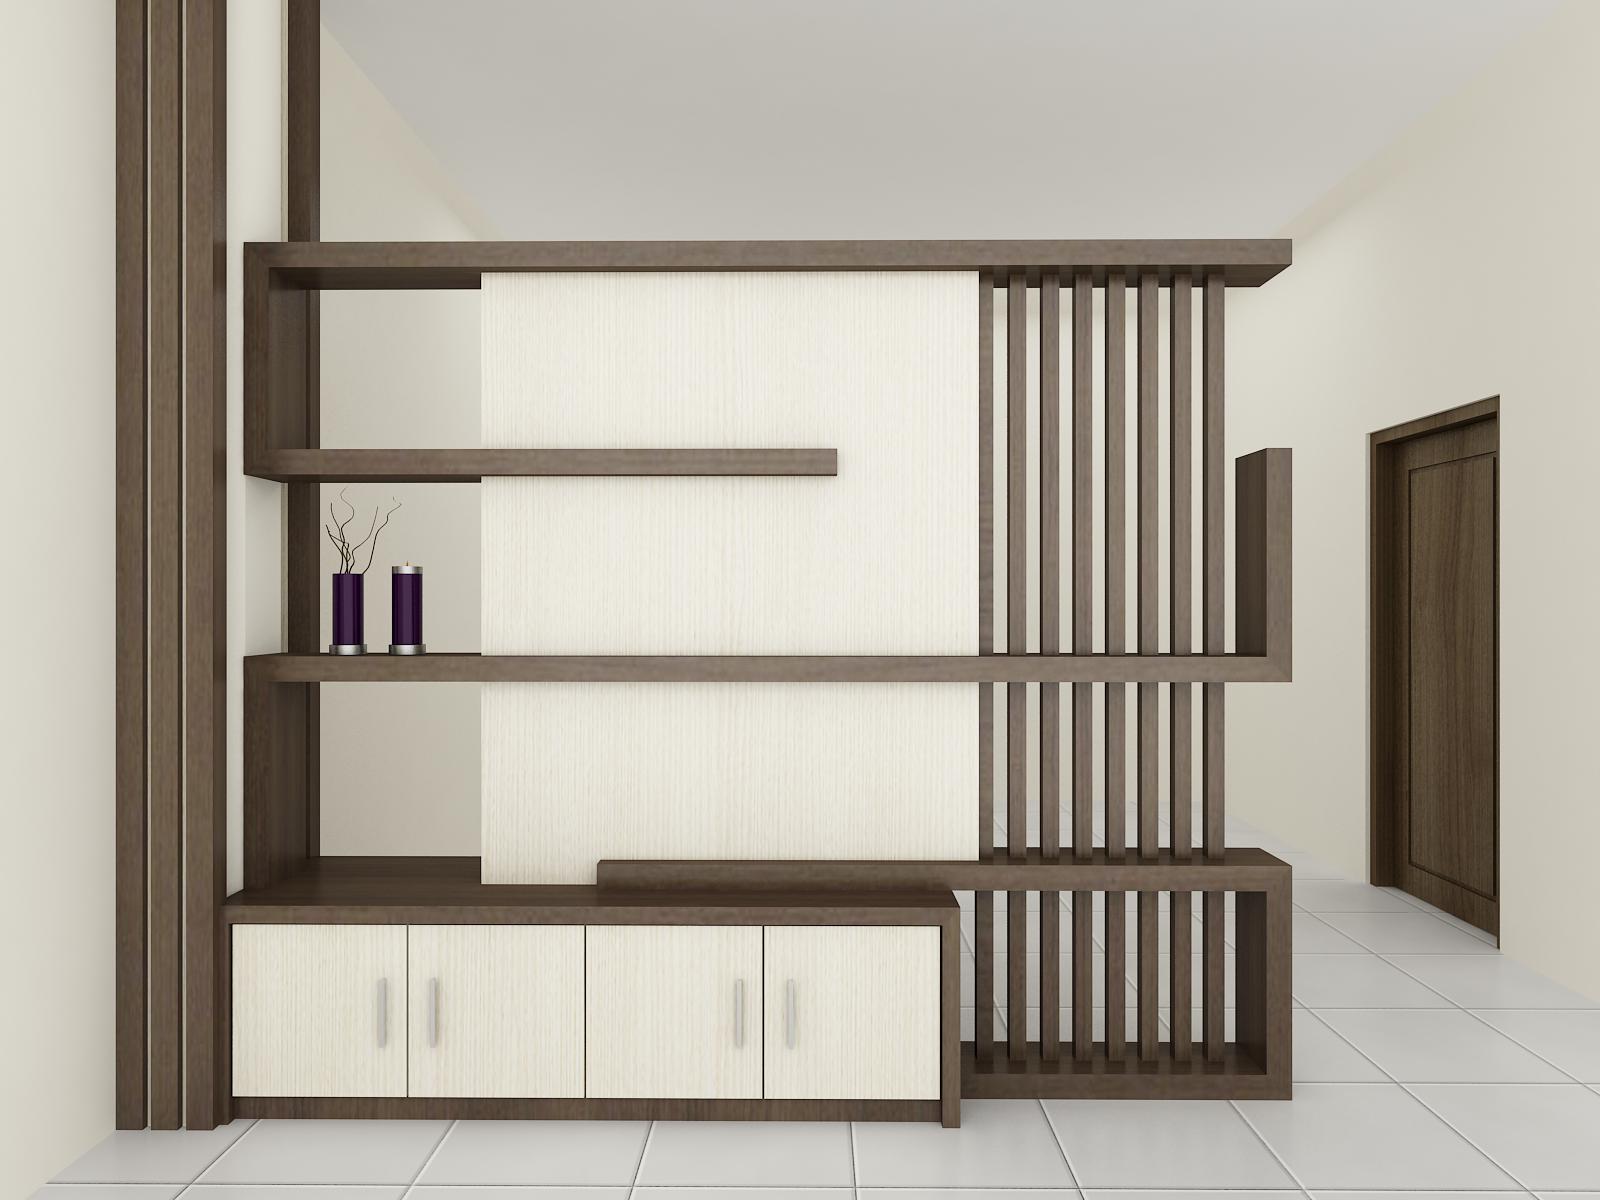 Desain Lemari Pembatas Ruang Tamu Dan Ruang Keluarga | Gambar Desain